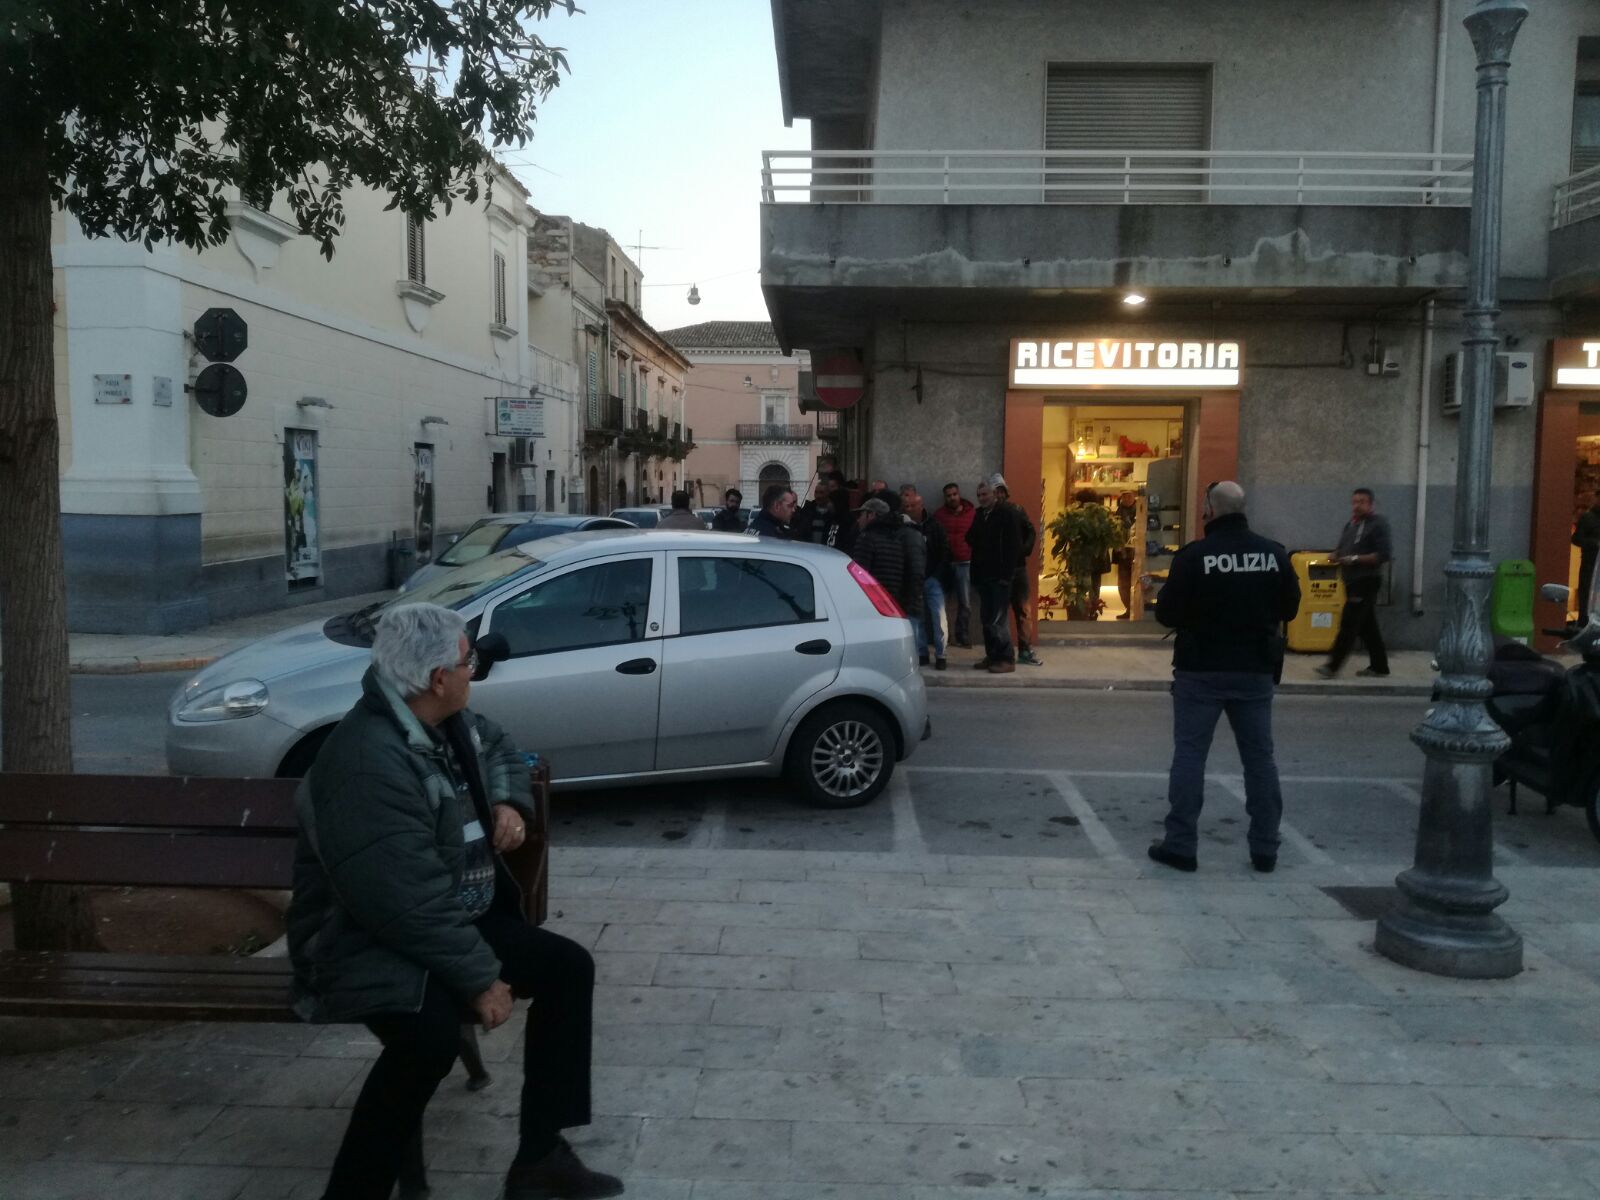  Controlli e perquisizioni: operazione interforze in piazza V.Emanuele e dintorni